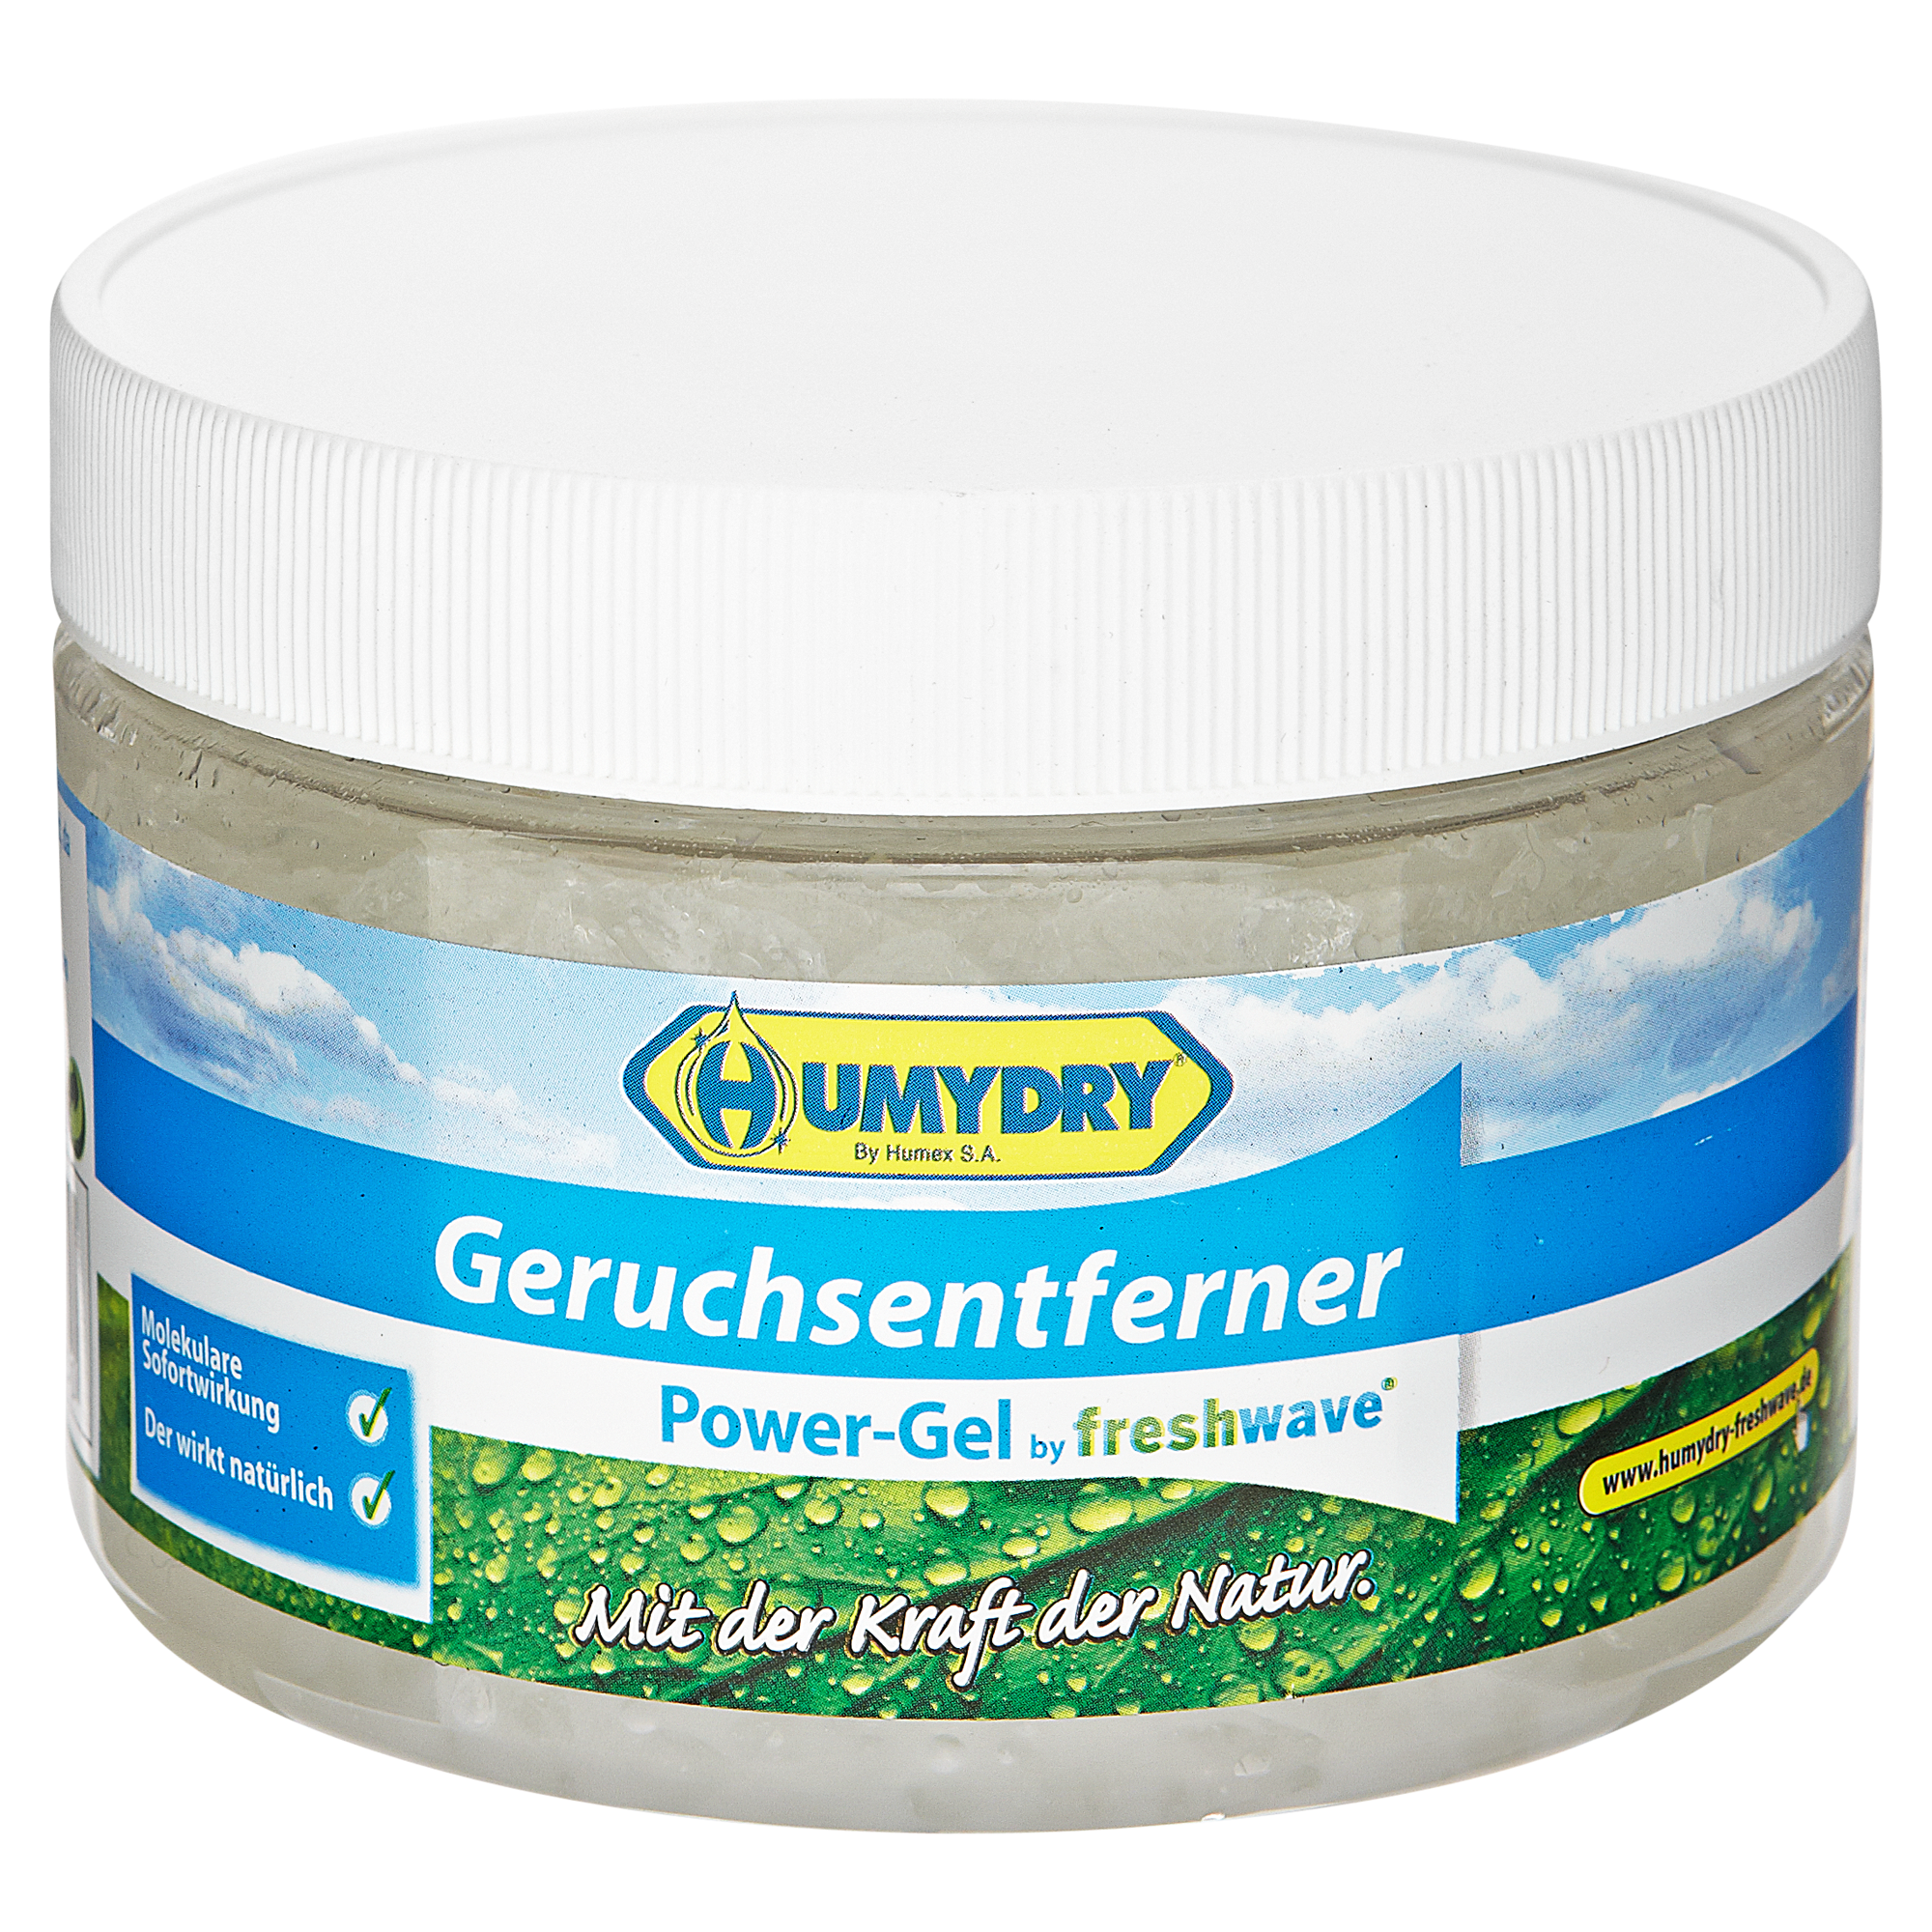 Geruchsentferner-Powergel "Freshwave" 400 g + product picture